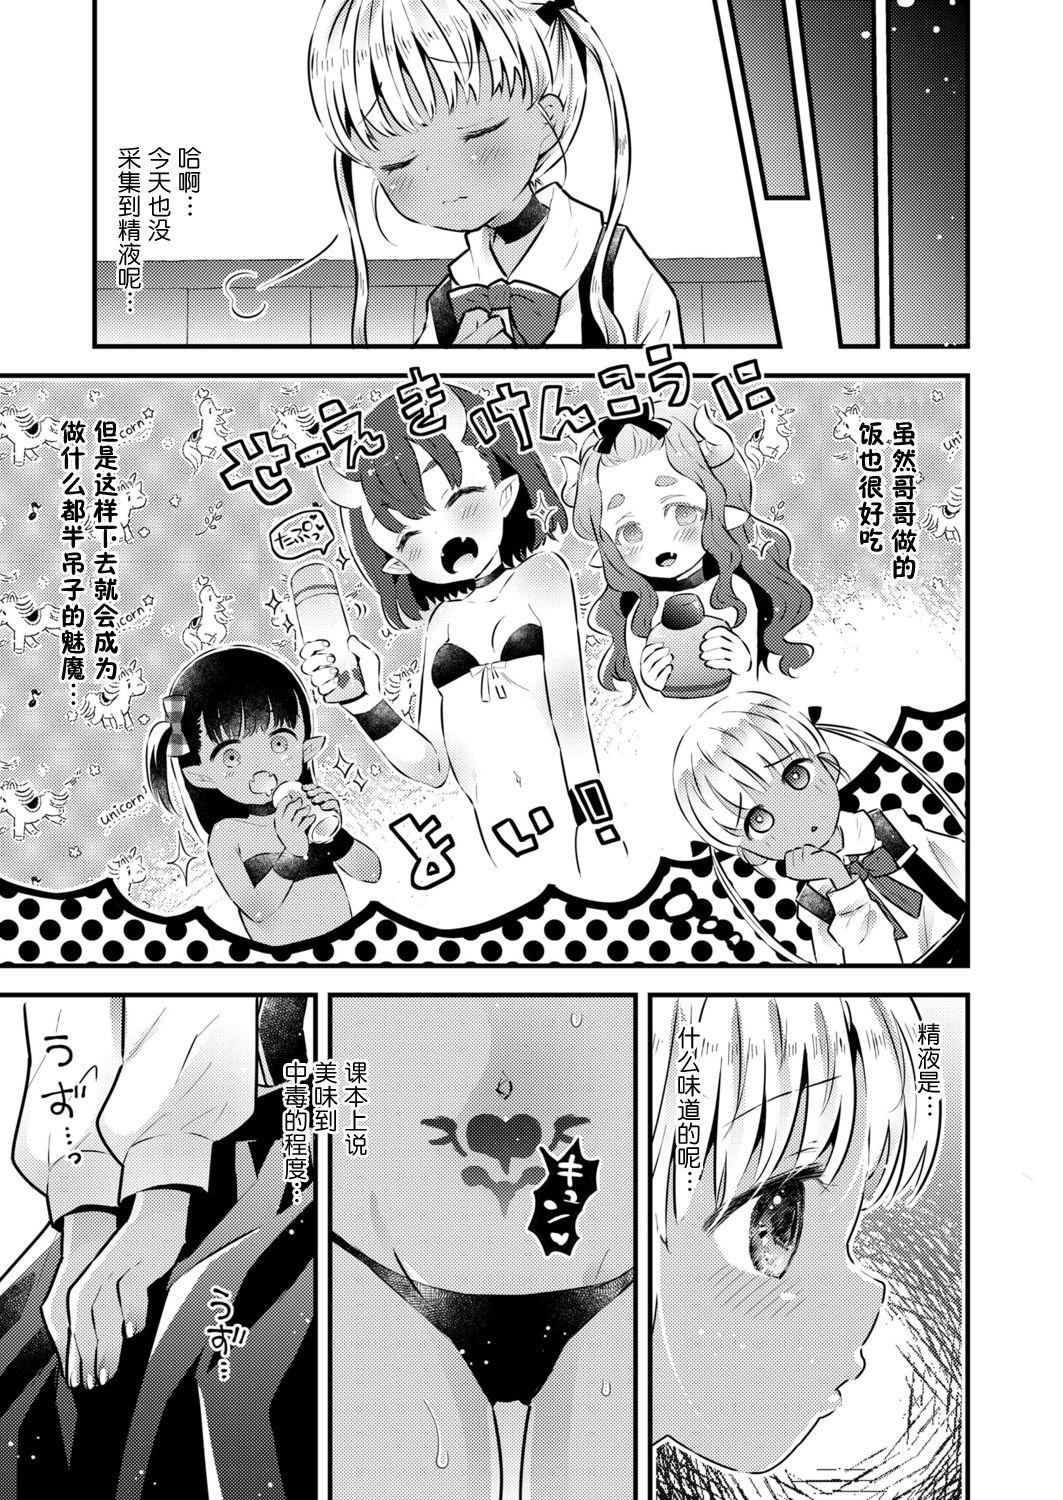 Cumming Ball Catch Hokiu-chan! Enema - Page 4